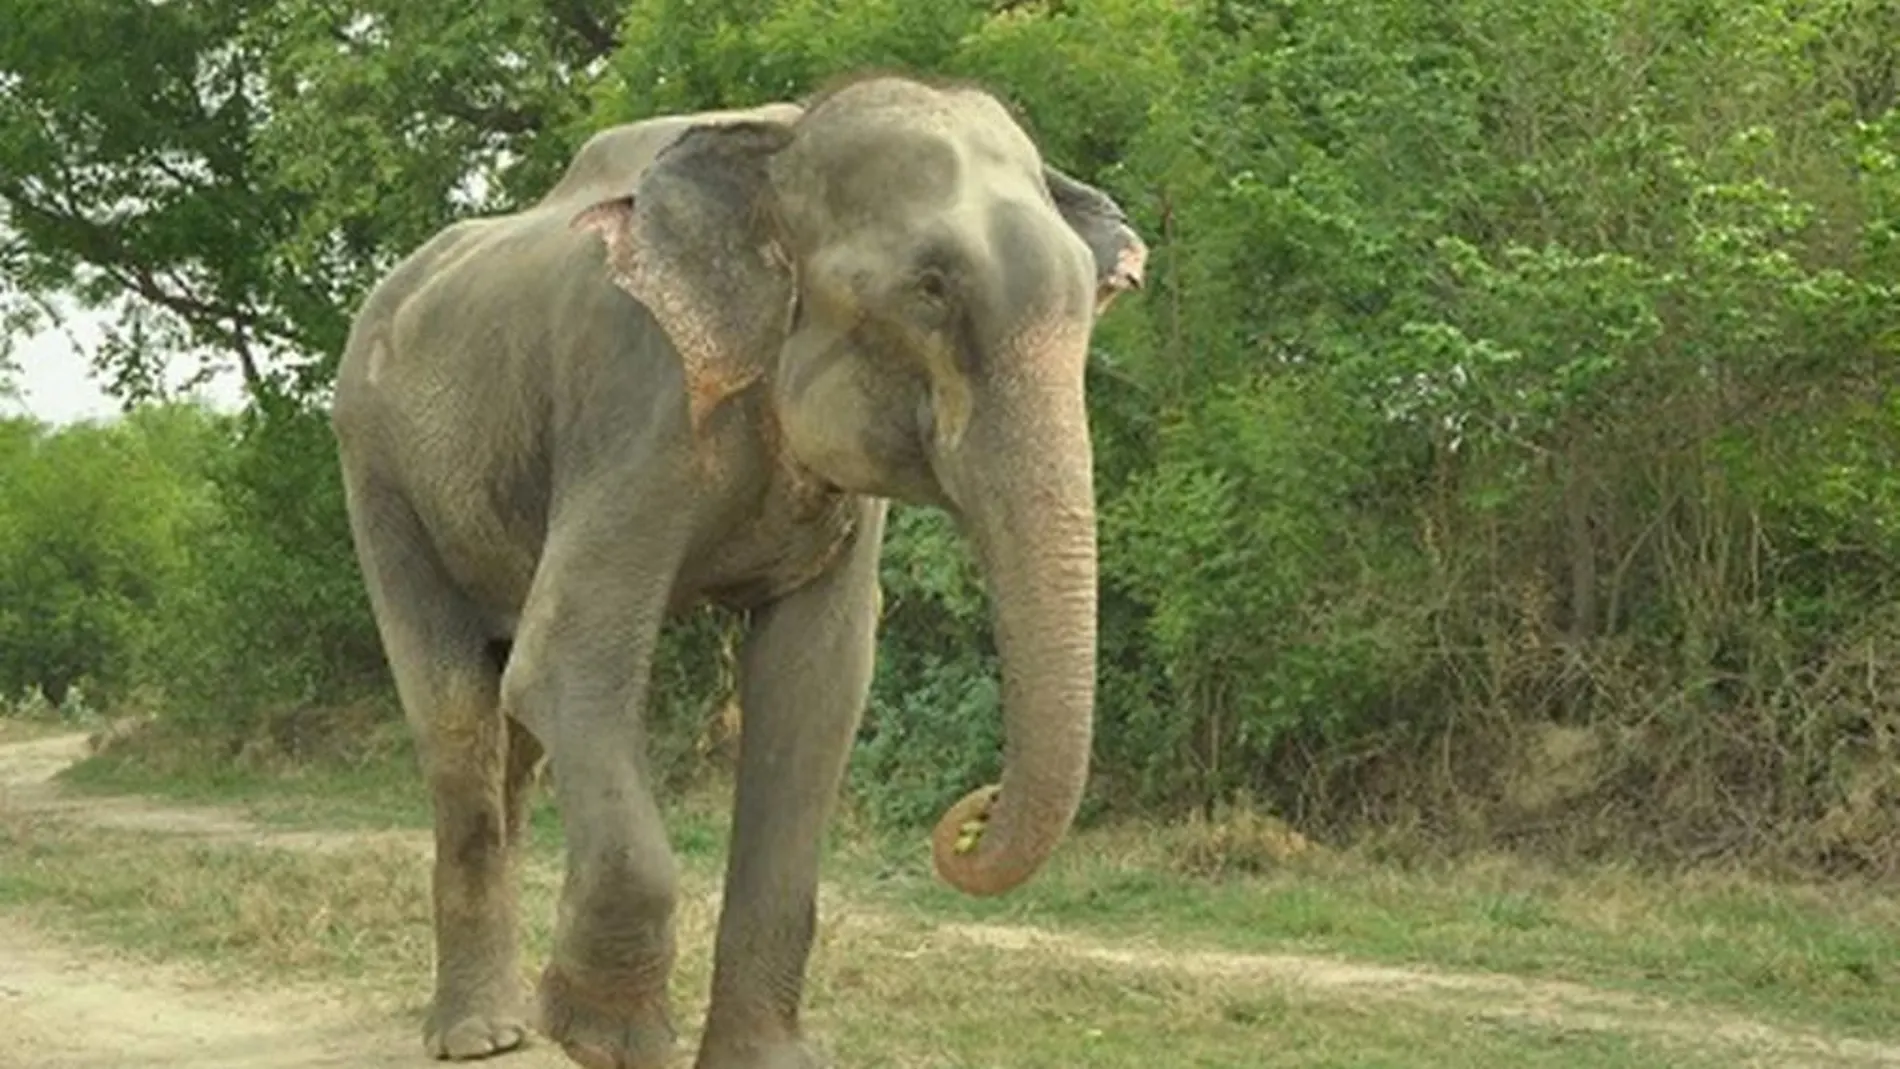 La liberación del elefante fue gabada en vídeo